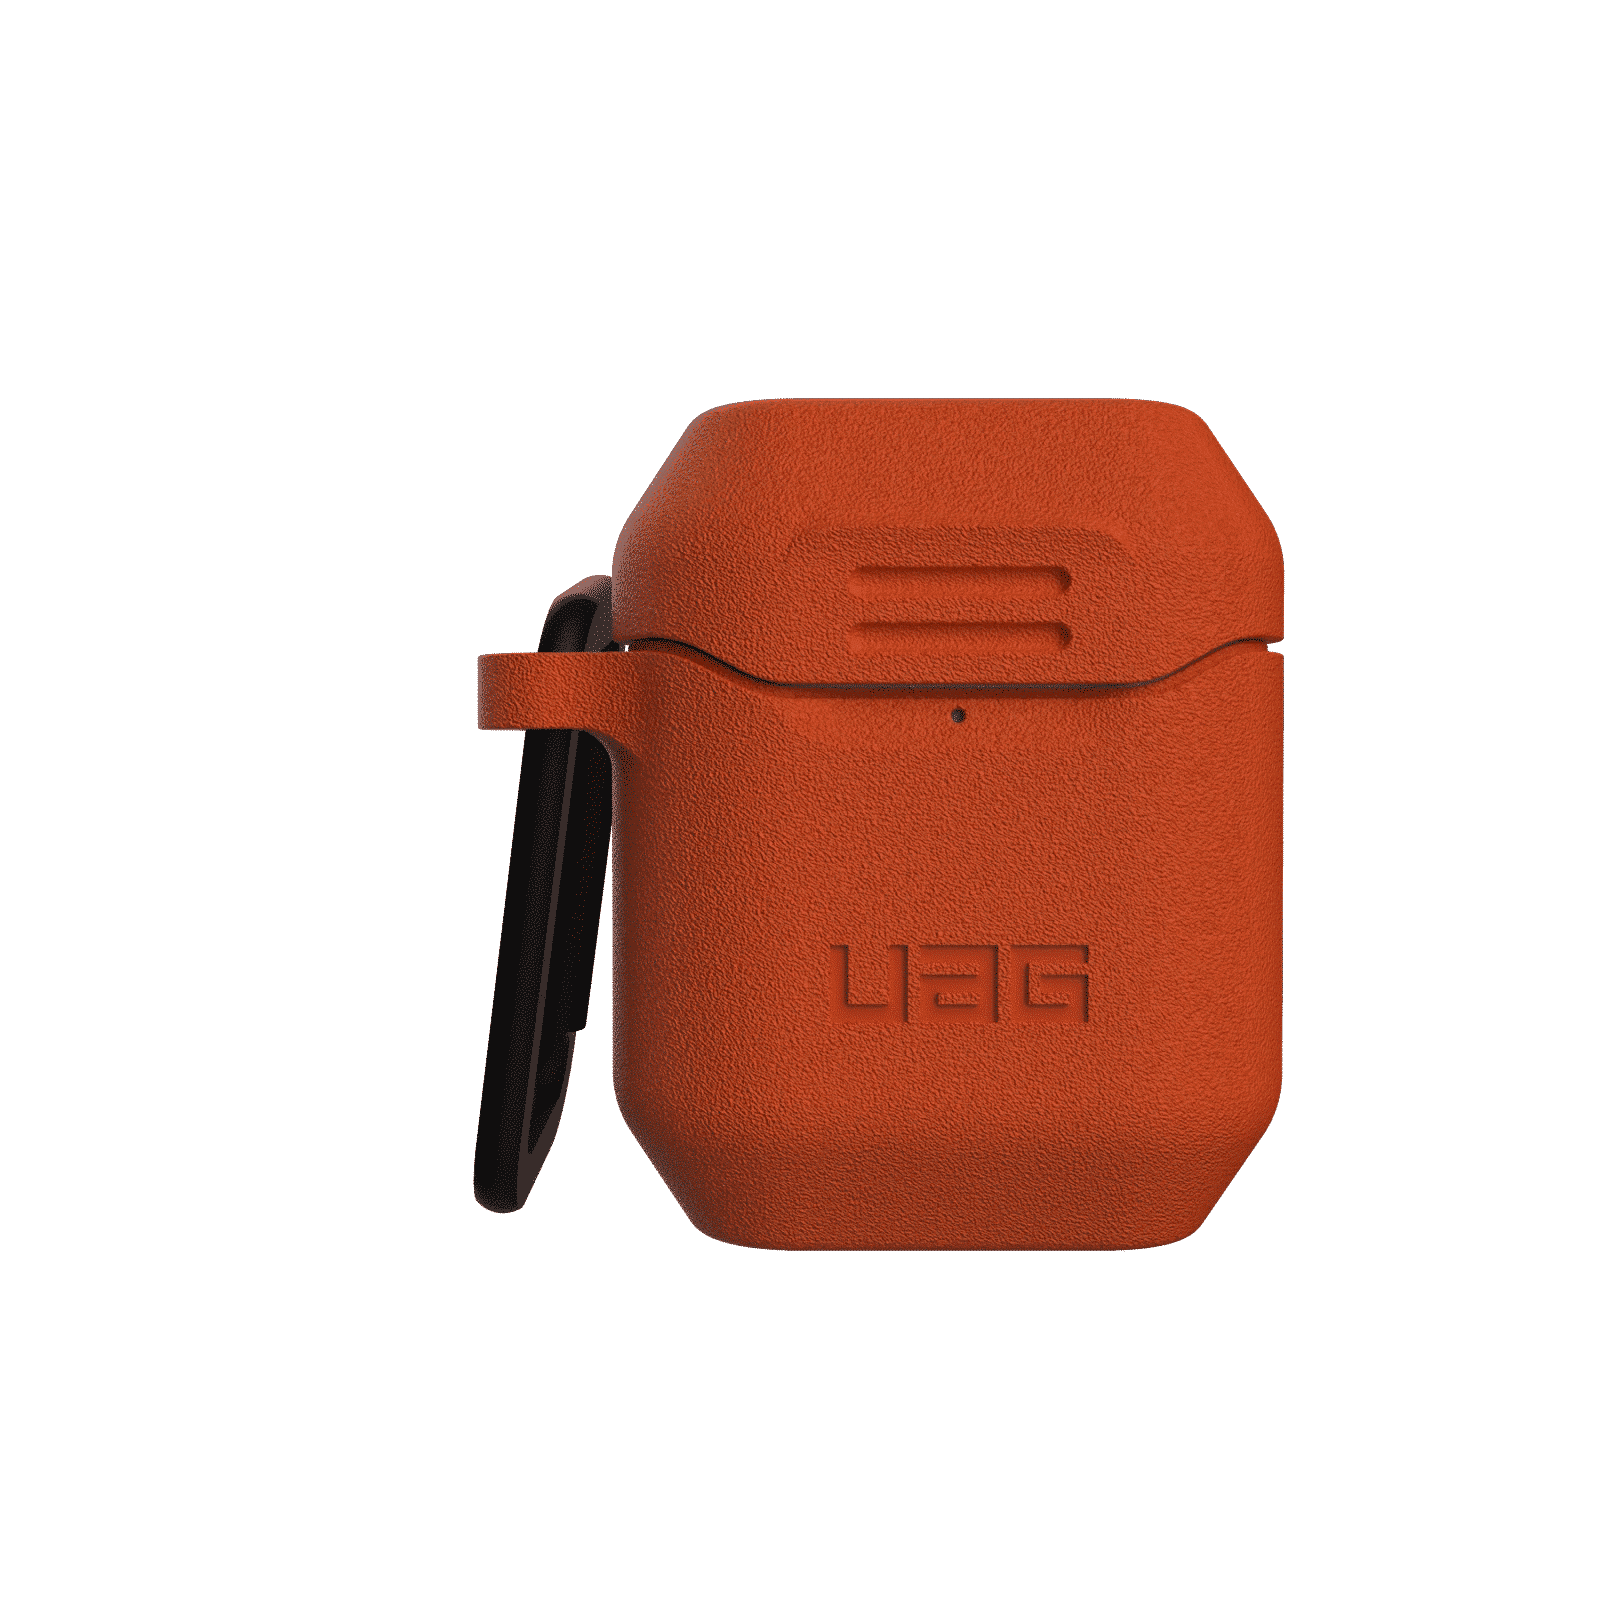 เคส UAG รุ่น Standard Issue Silicone Case - AirPods 1/2 - ส้ม